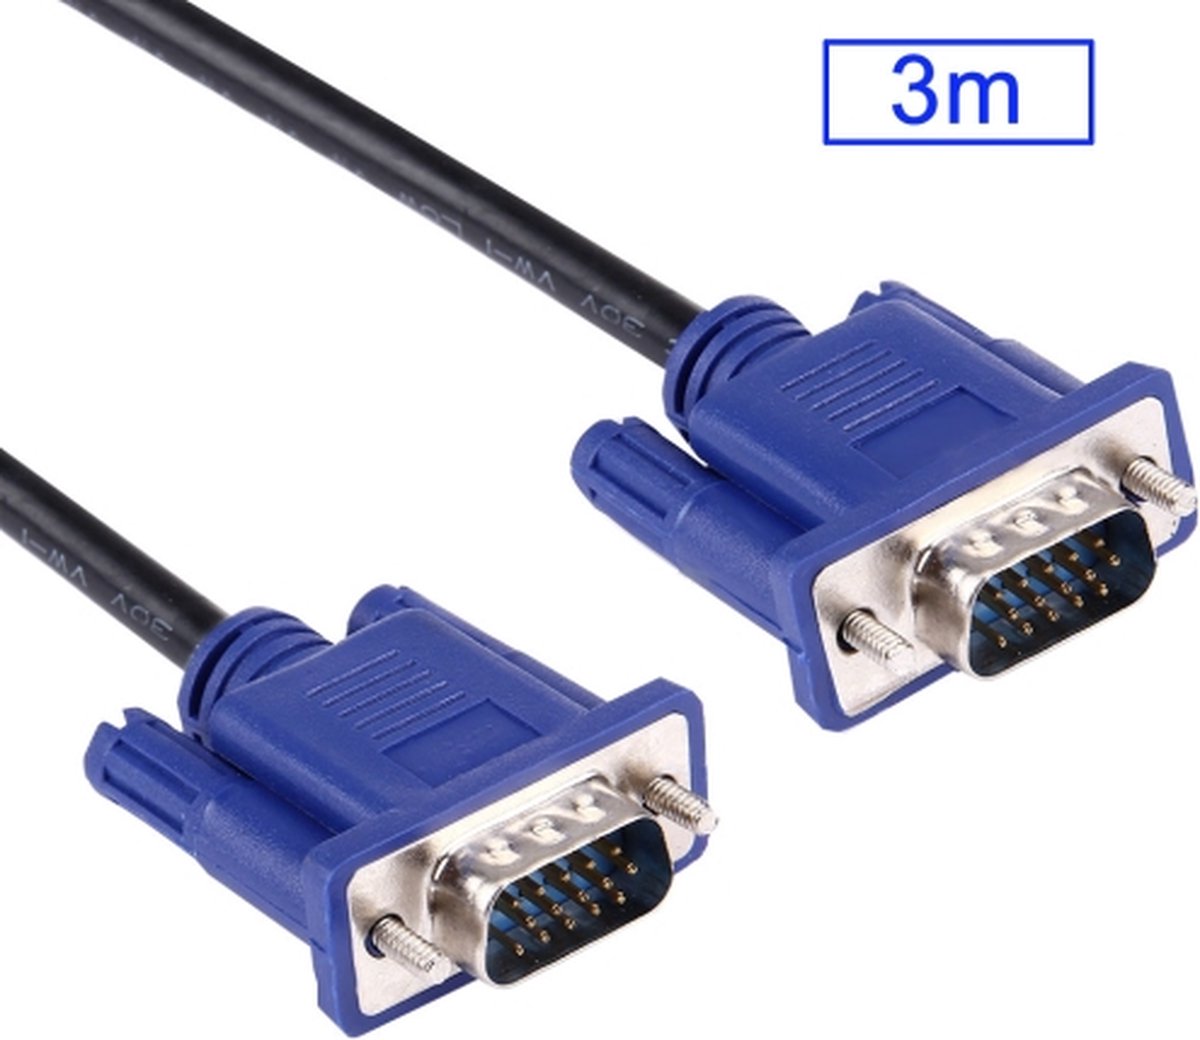 Generic Câble Adaptateur HDMI vers VGA Mâle D-SUB pour moniteur d